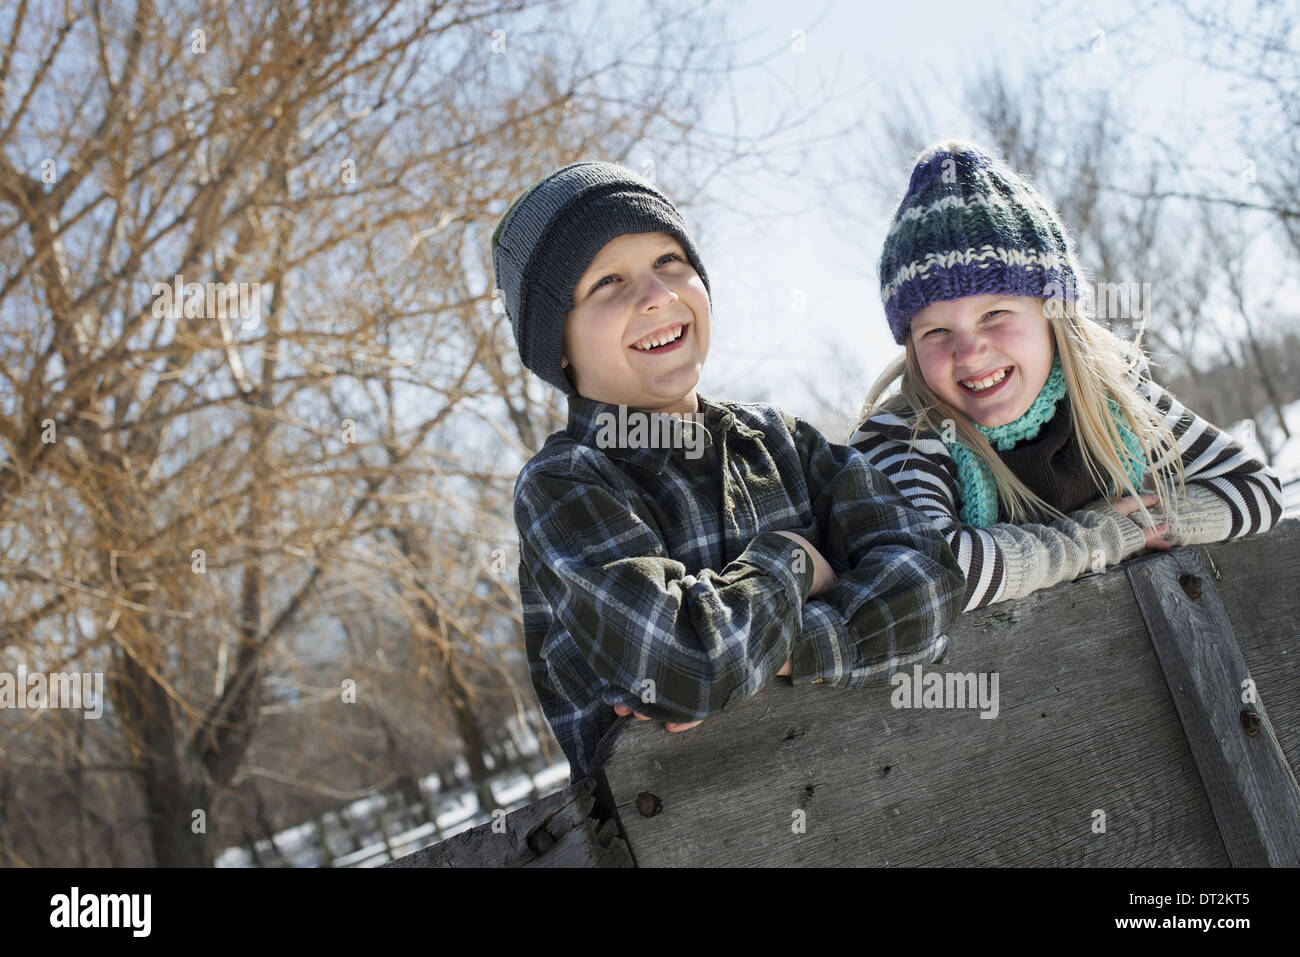 Winterlandschaft mit Schnee auf dem Boden zwei Kinder in Strickmützen stützte sich auf einen Zaun Stockfoto